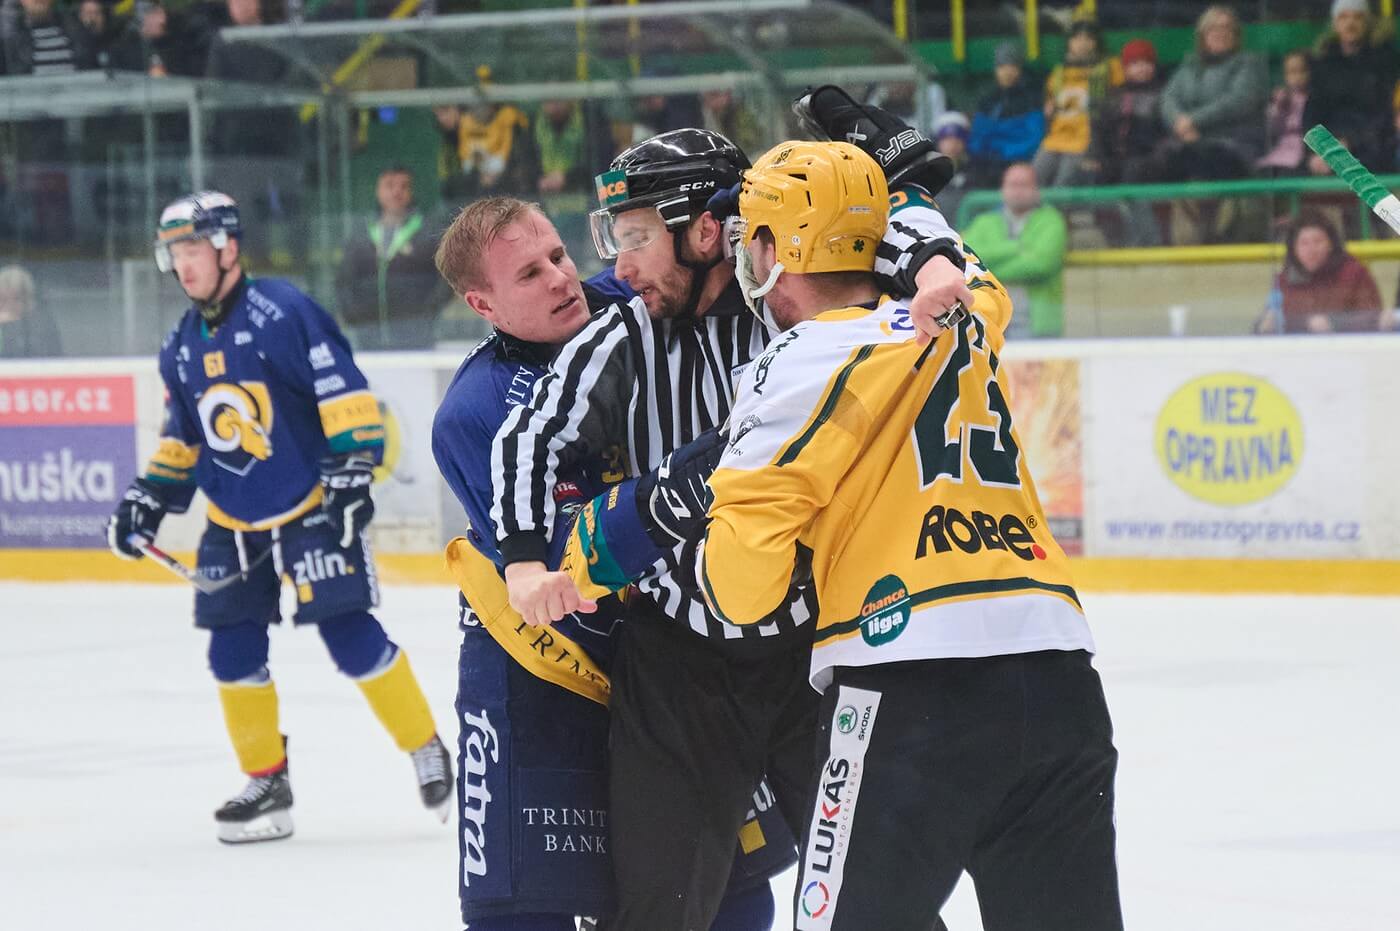 Typická momentka z valašského hokejového derby. Rozhodčí od sebe rozděluje Luboše Roba (Vsetín) a Aleksiho Salonena (Zlín)